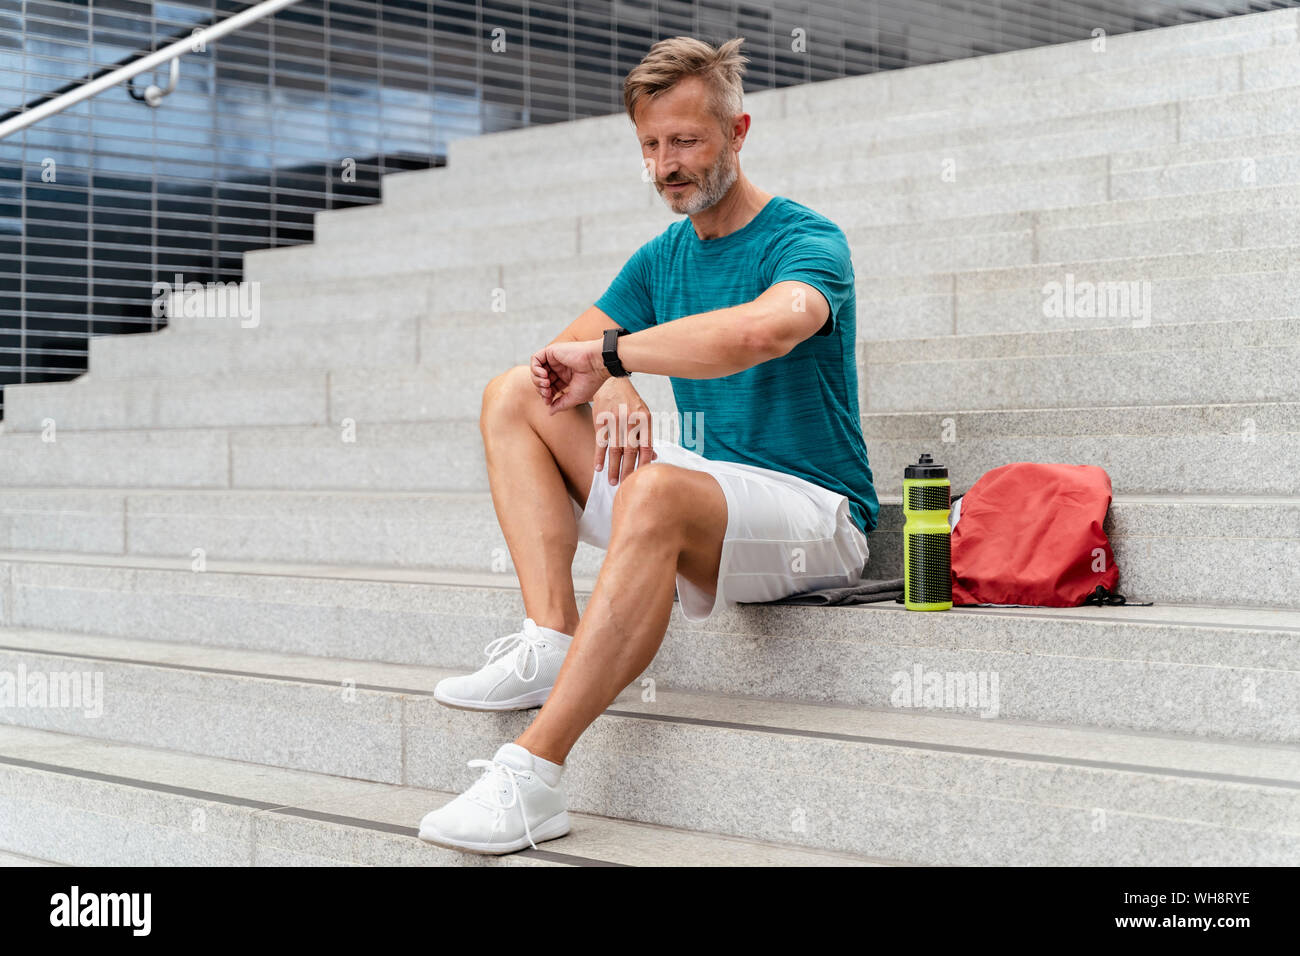 Sportliche Mann seine Smartwatch prüfen Stockfoto